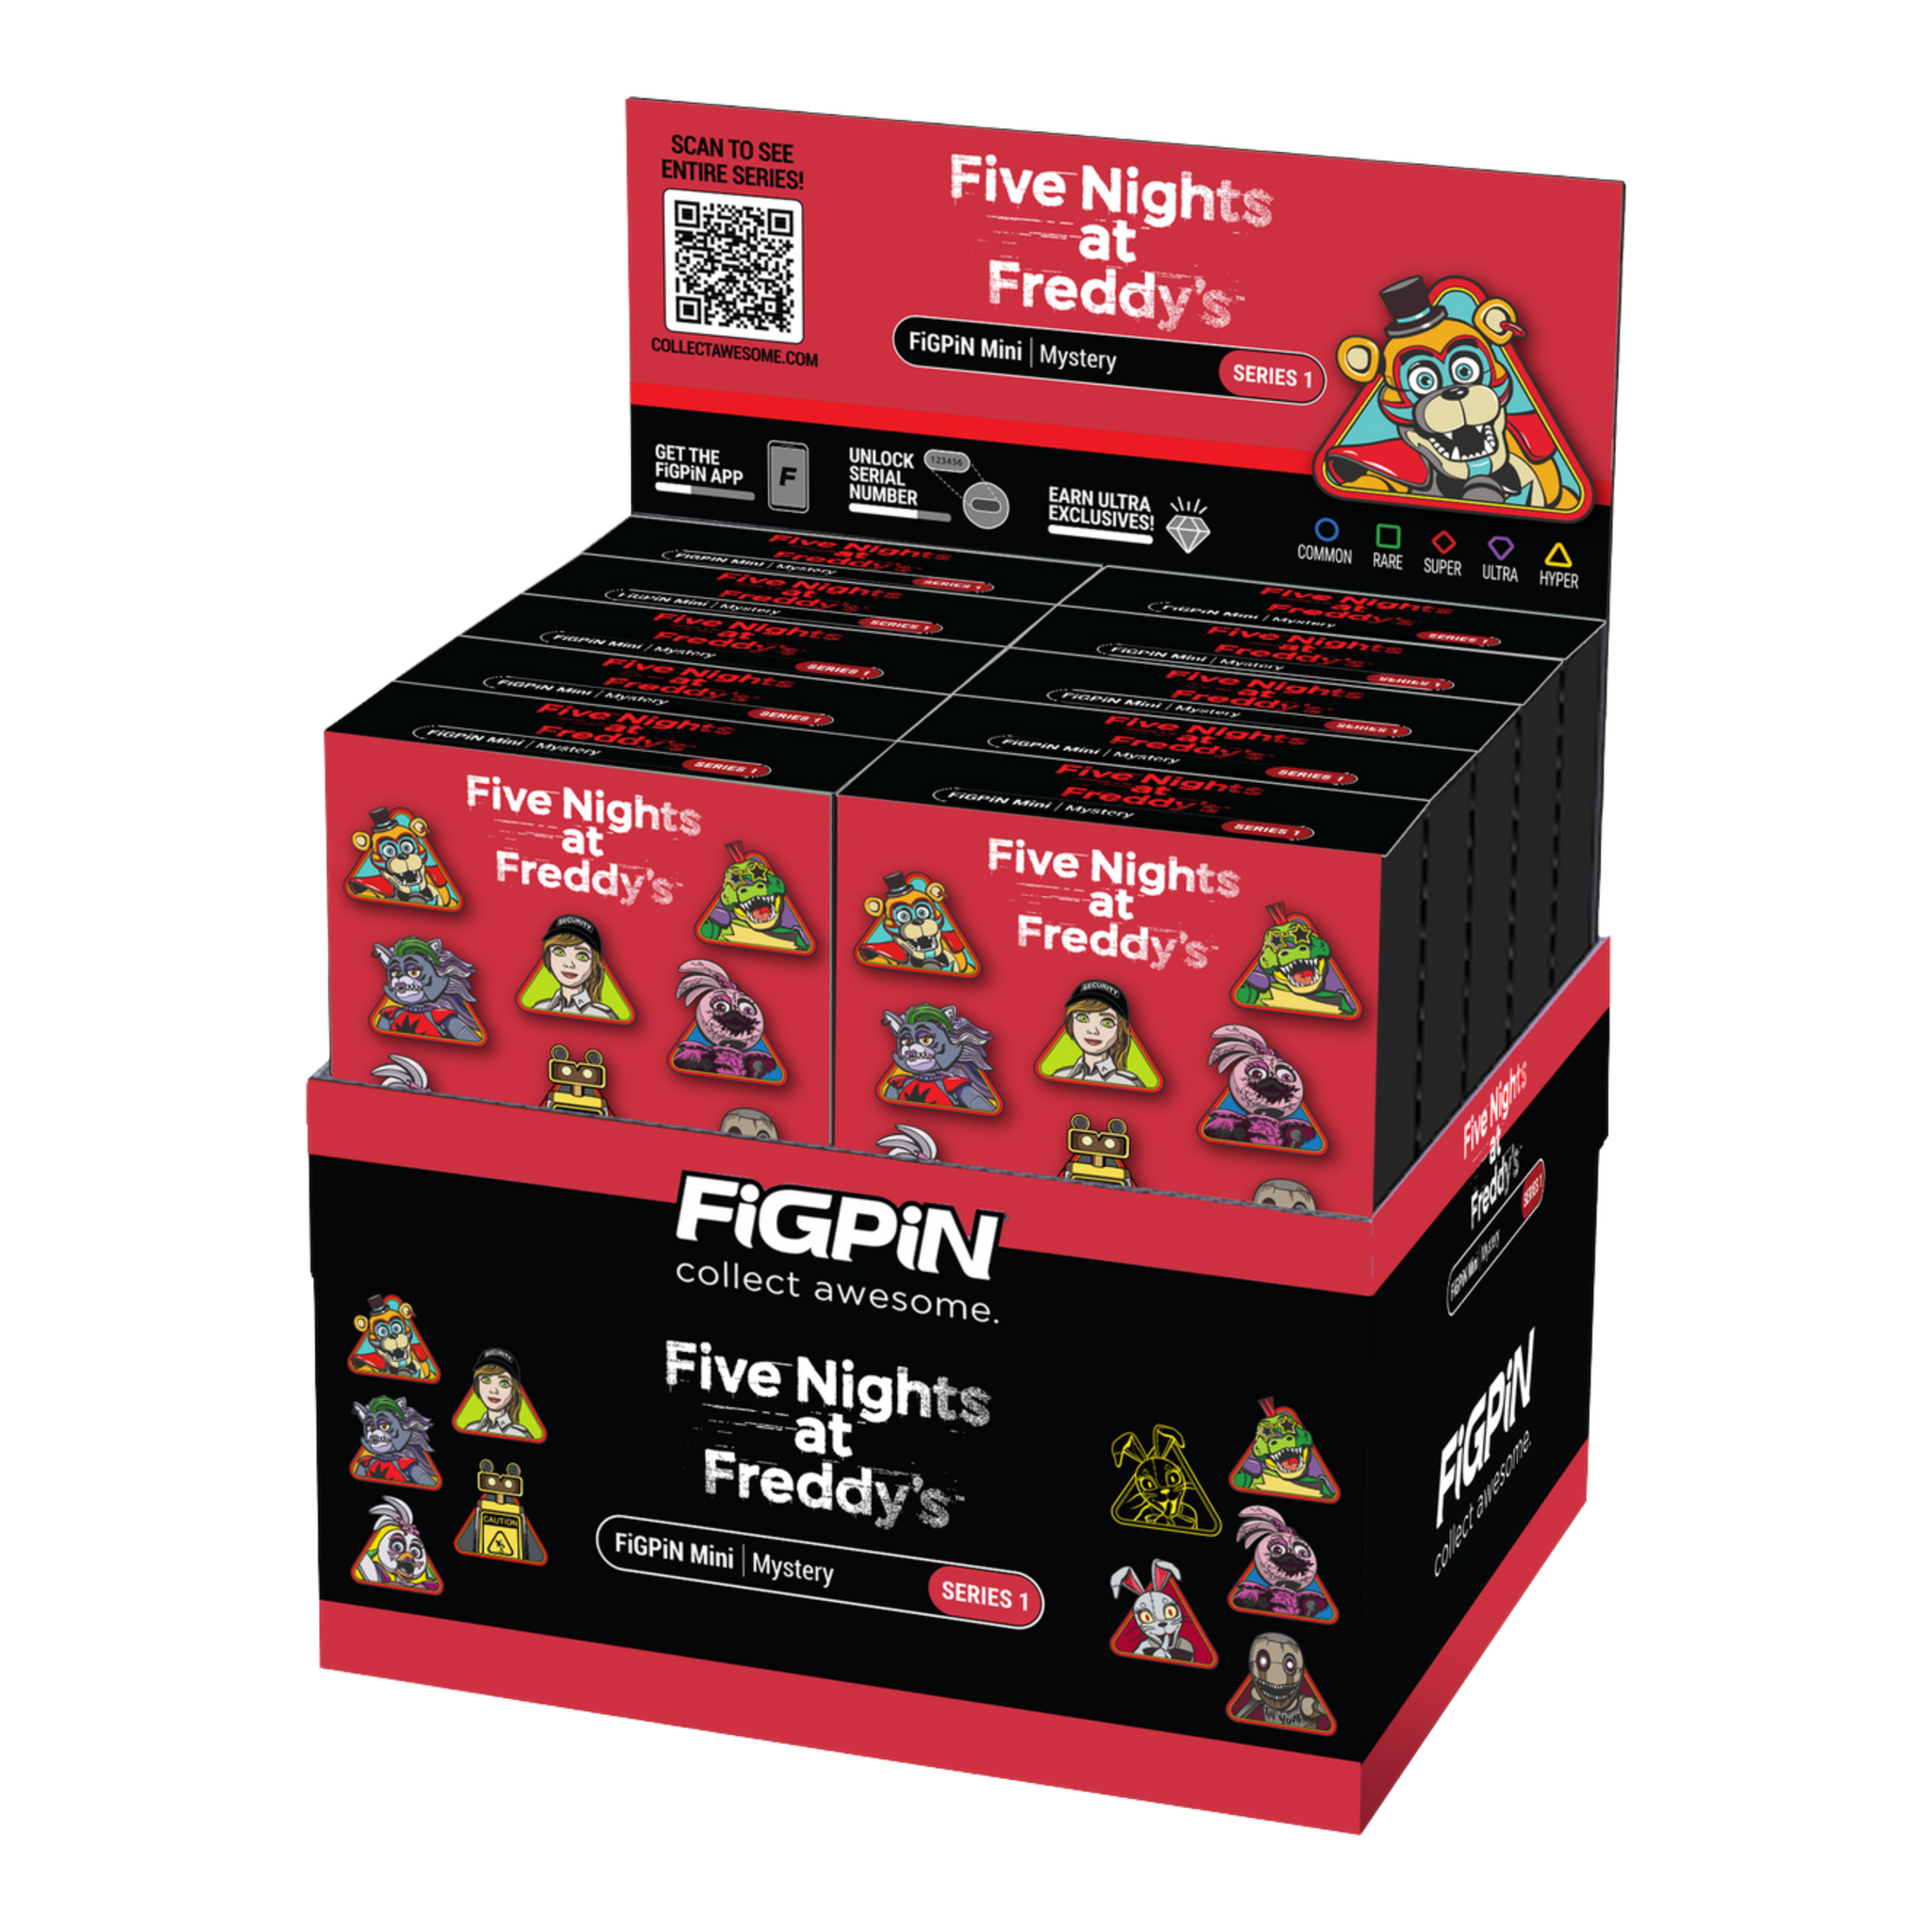 FNAF Single Fig Pack